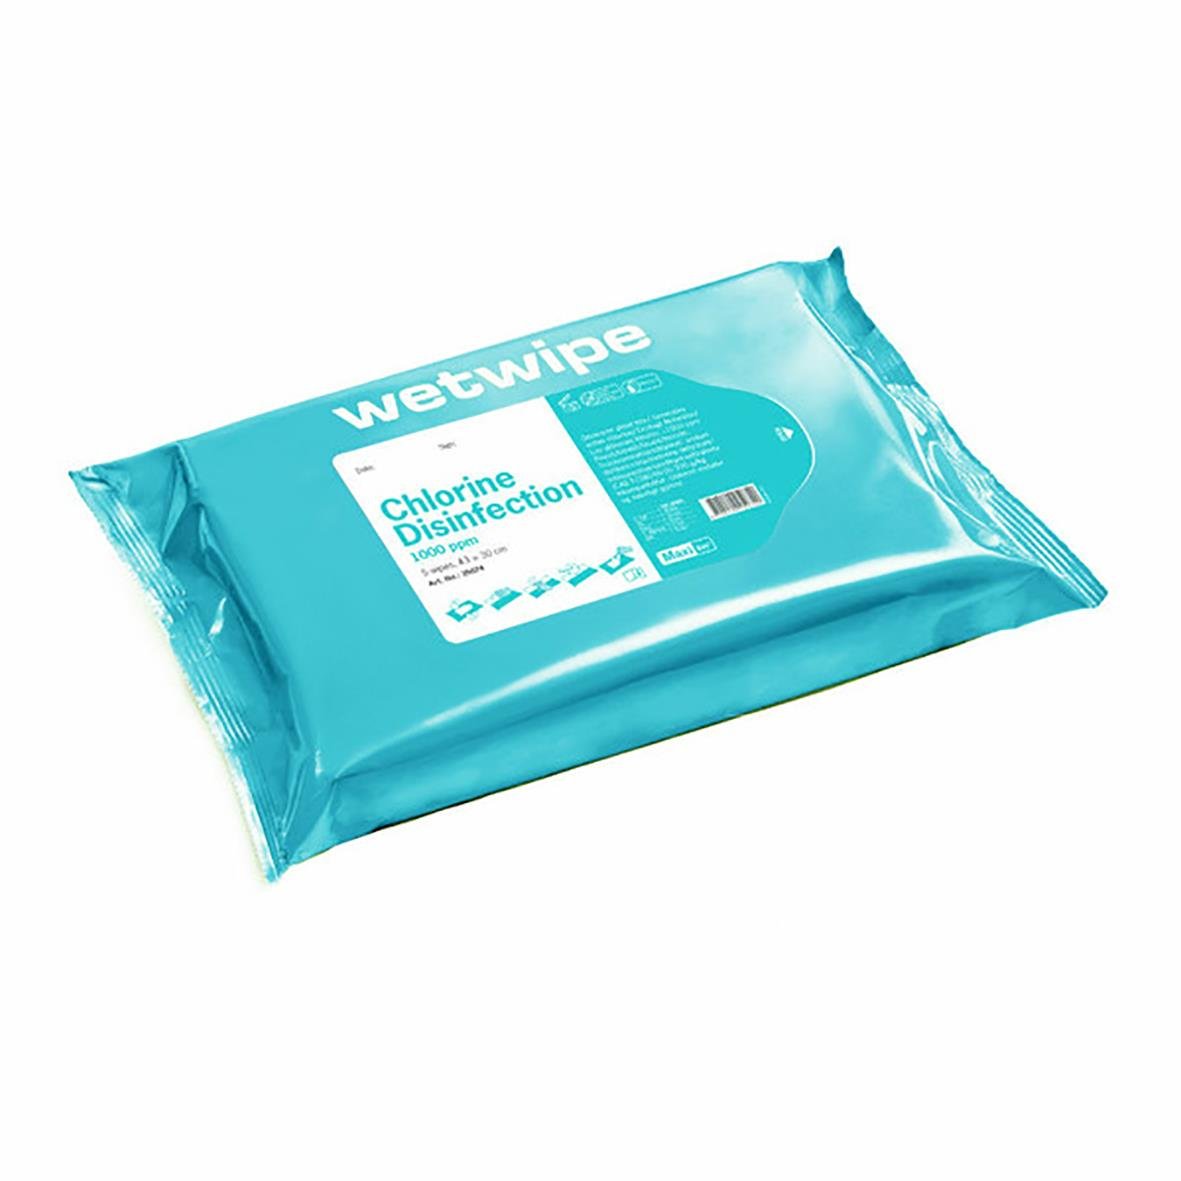 Ytdesinfektion Wet Wipe Servett Maxi 410x300mm 51010261